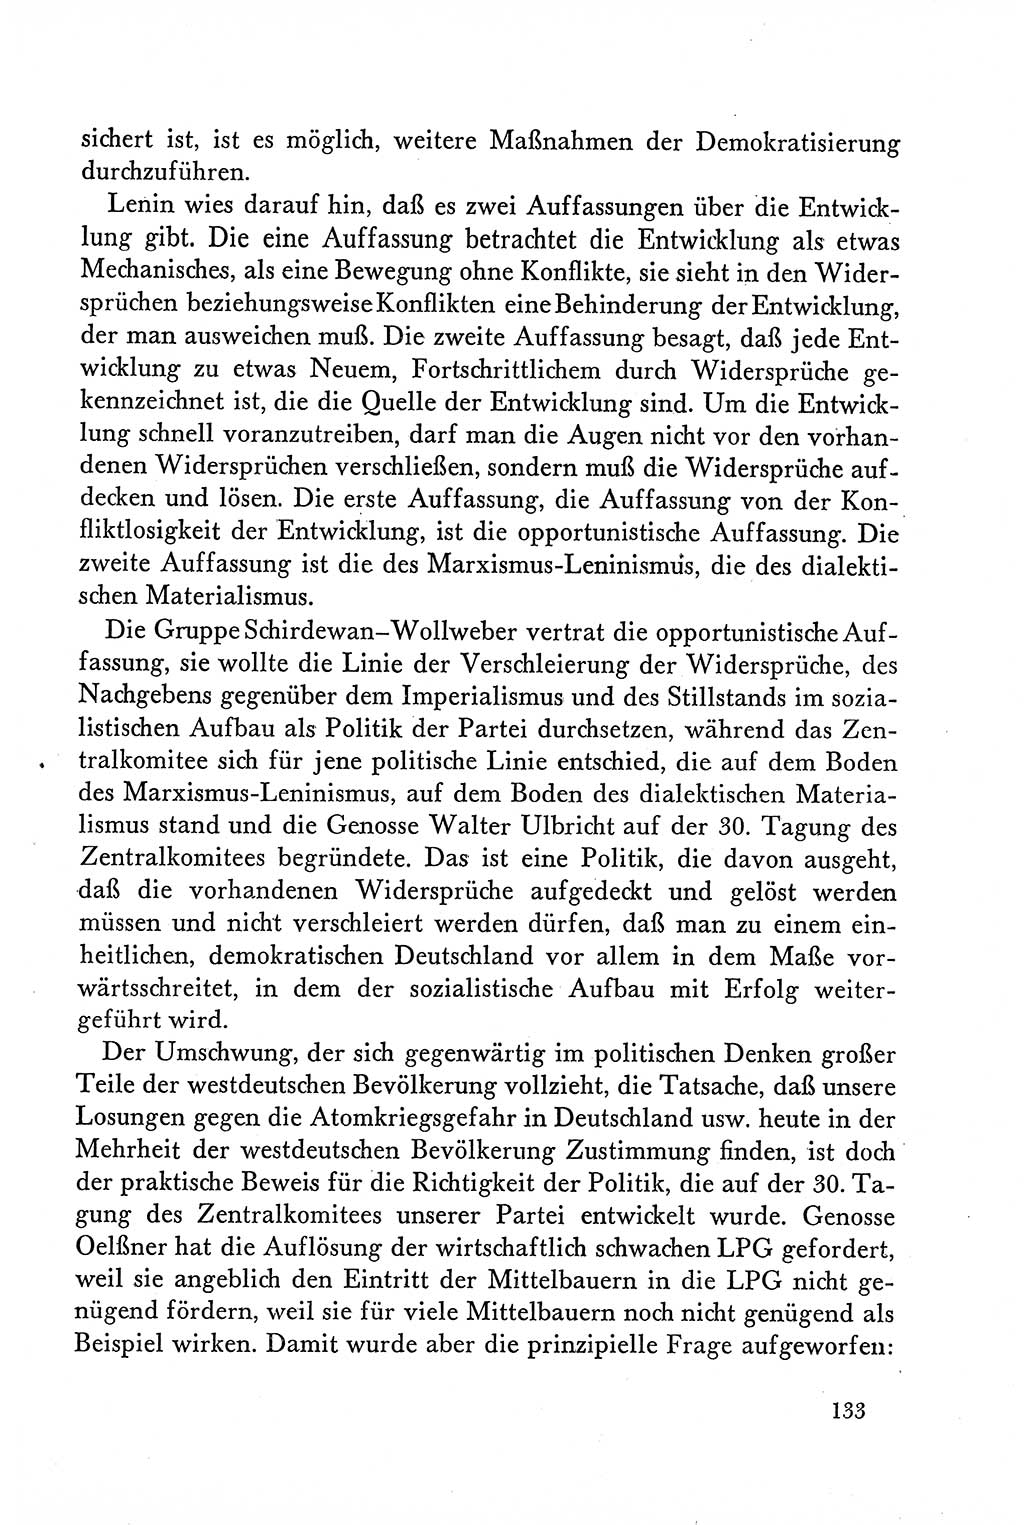 Dokumente der Sozialistischen Einheitspartei Deutschlands (SED) [Deutsche Demokratische Republik (DDR)] 1958-1959, Seite 133 (Dok. SED DDR 1958-1959, S. 133)